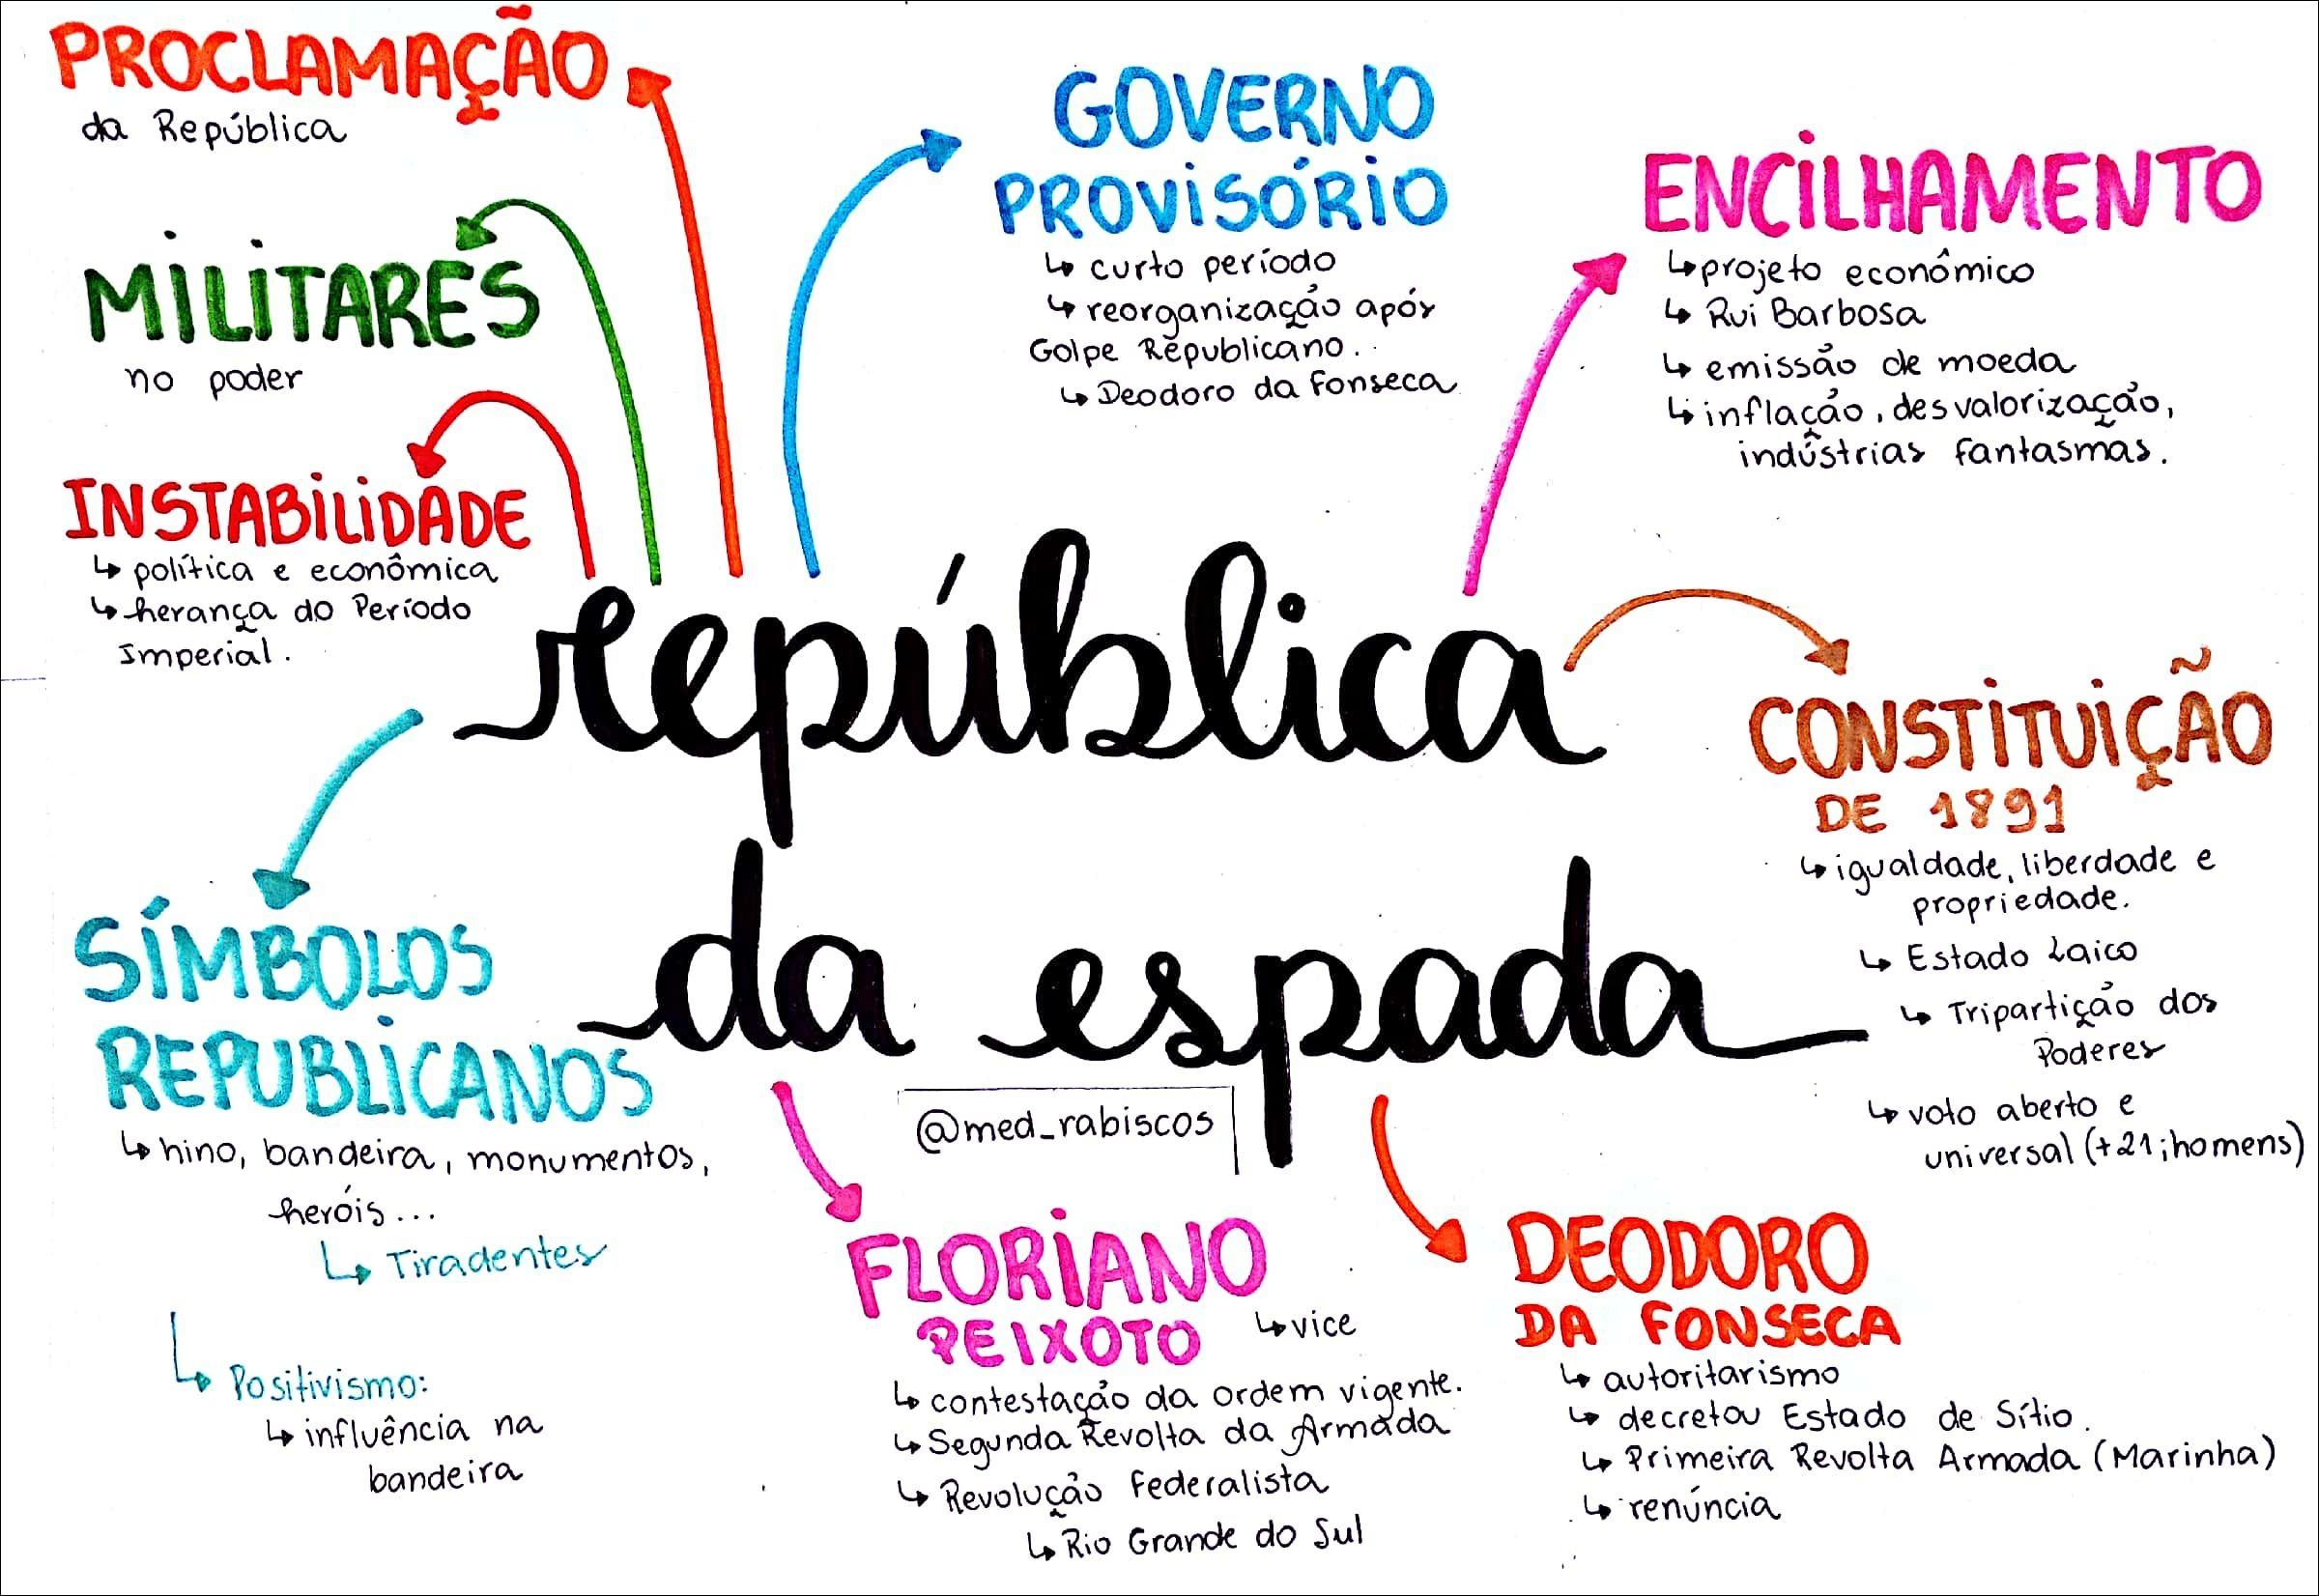 Brasil republica